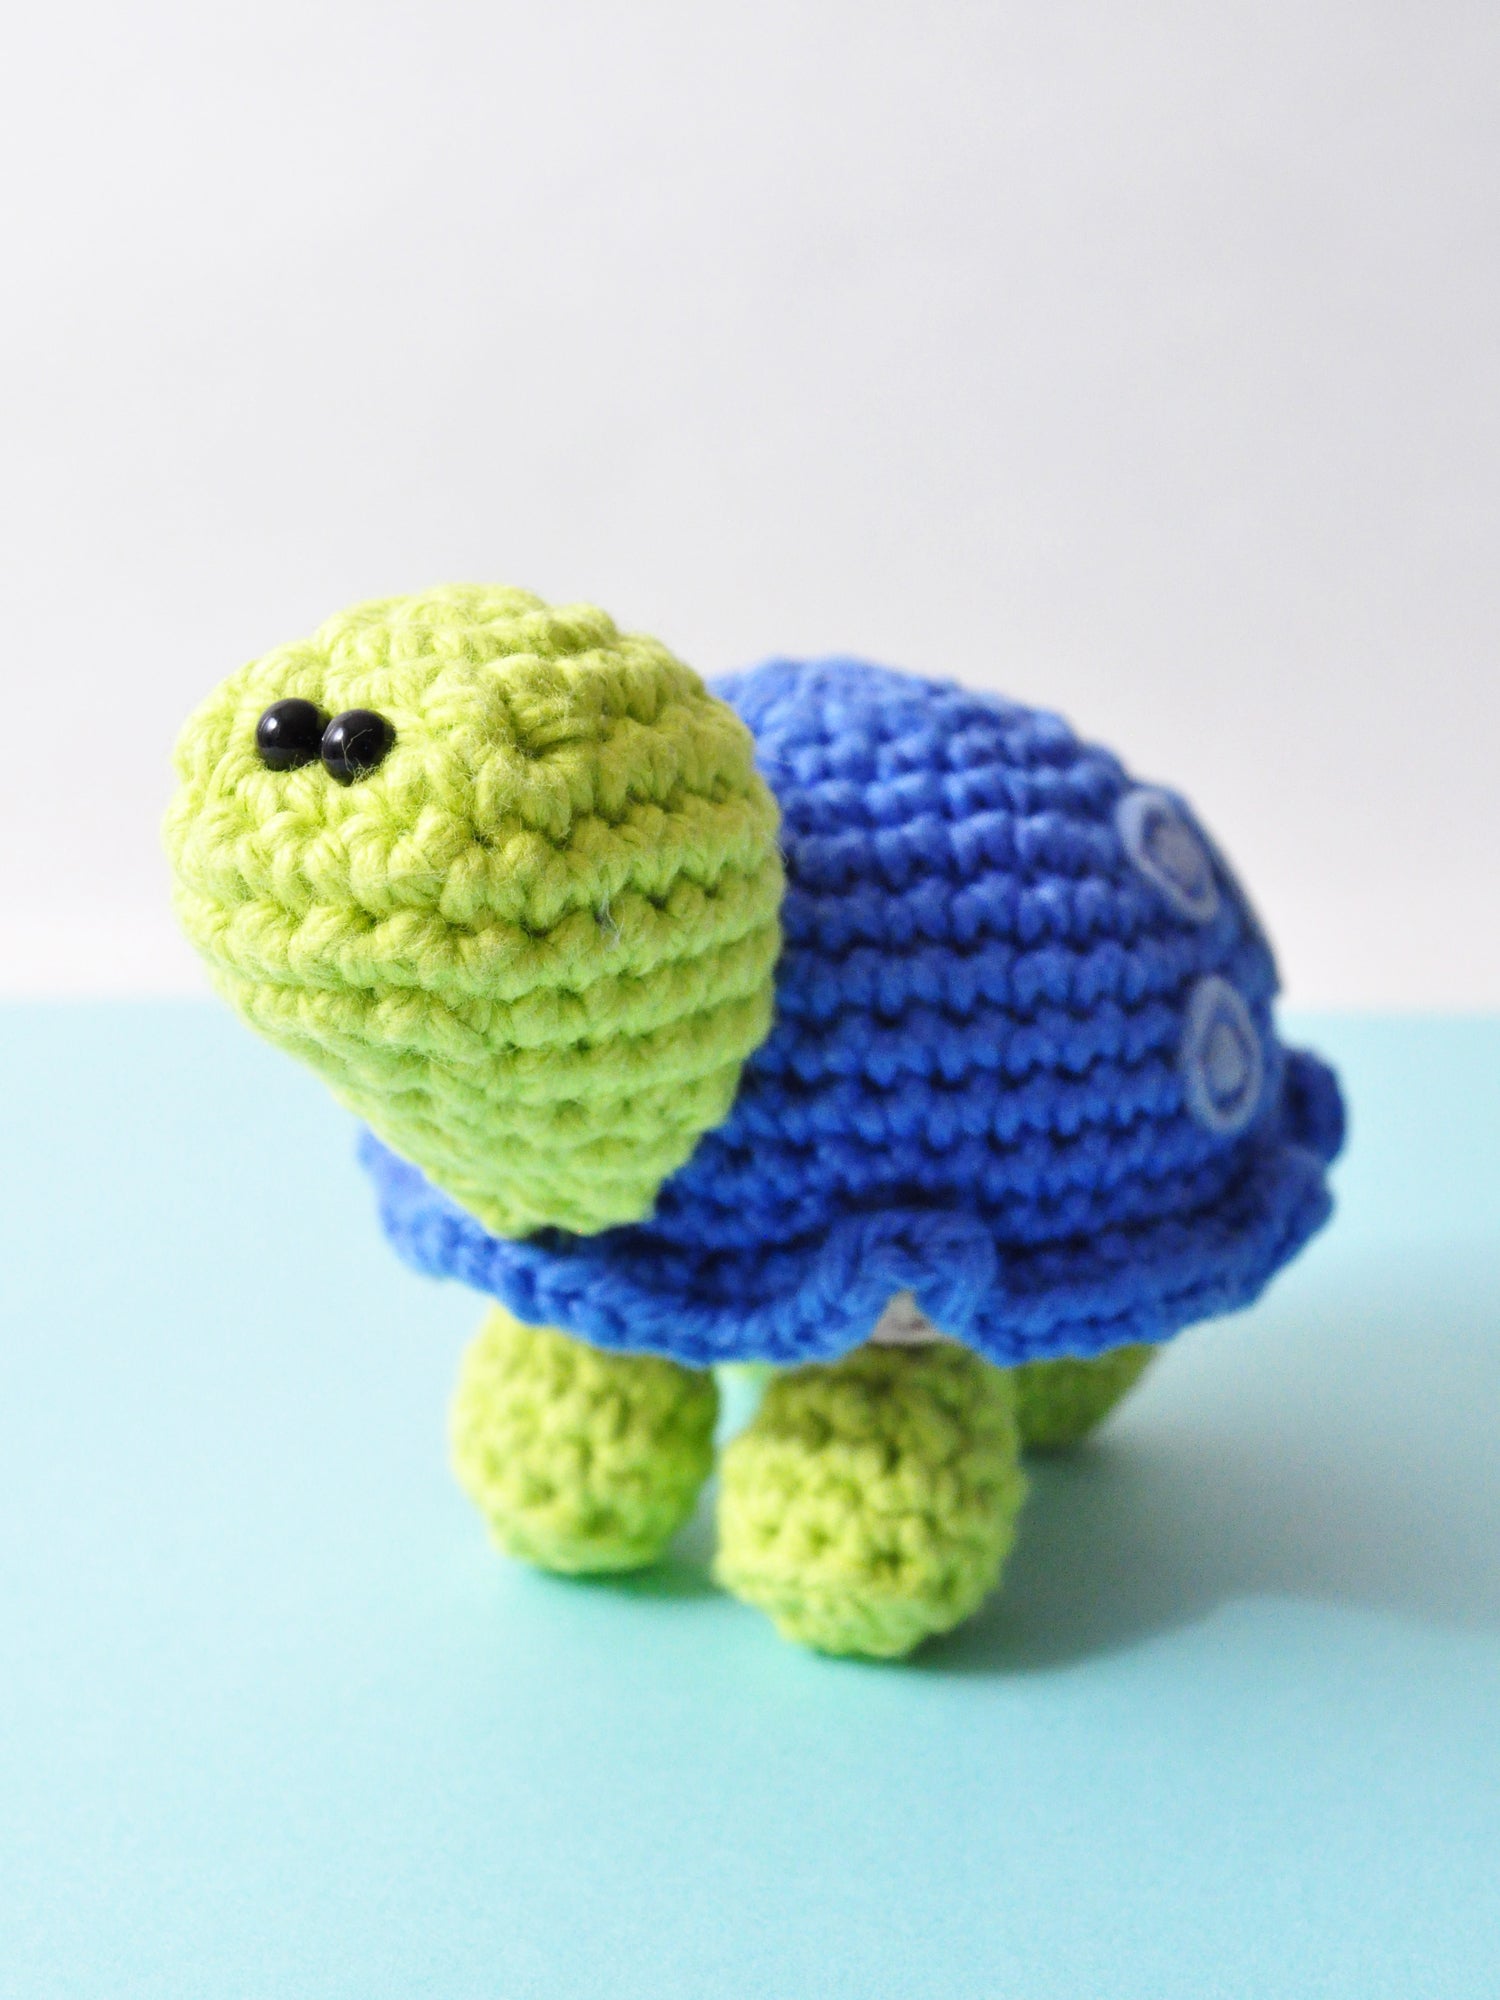 Turtle Crochet Kit Easy Level Crochet Kit Crochet Turtle Gift